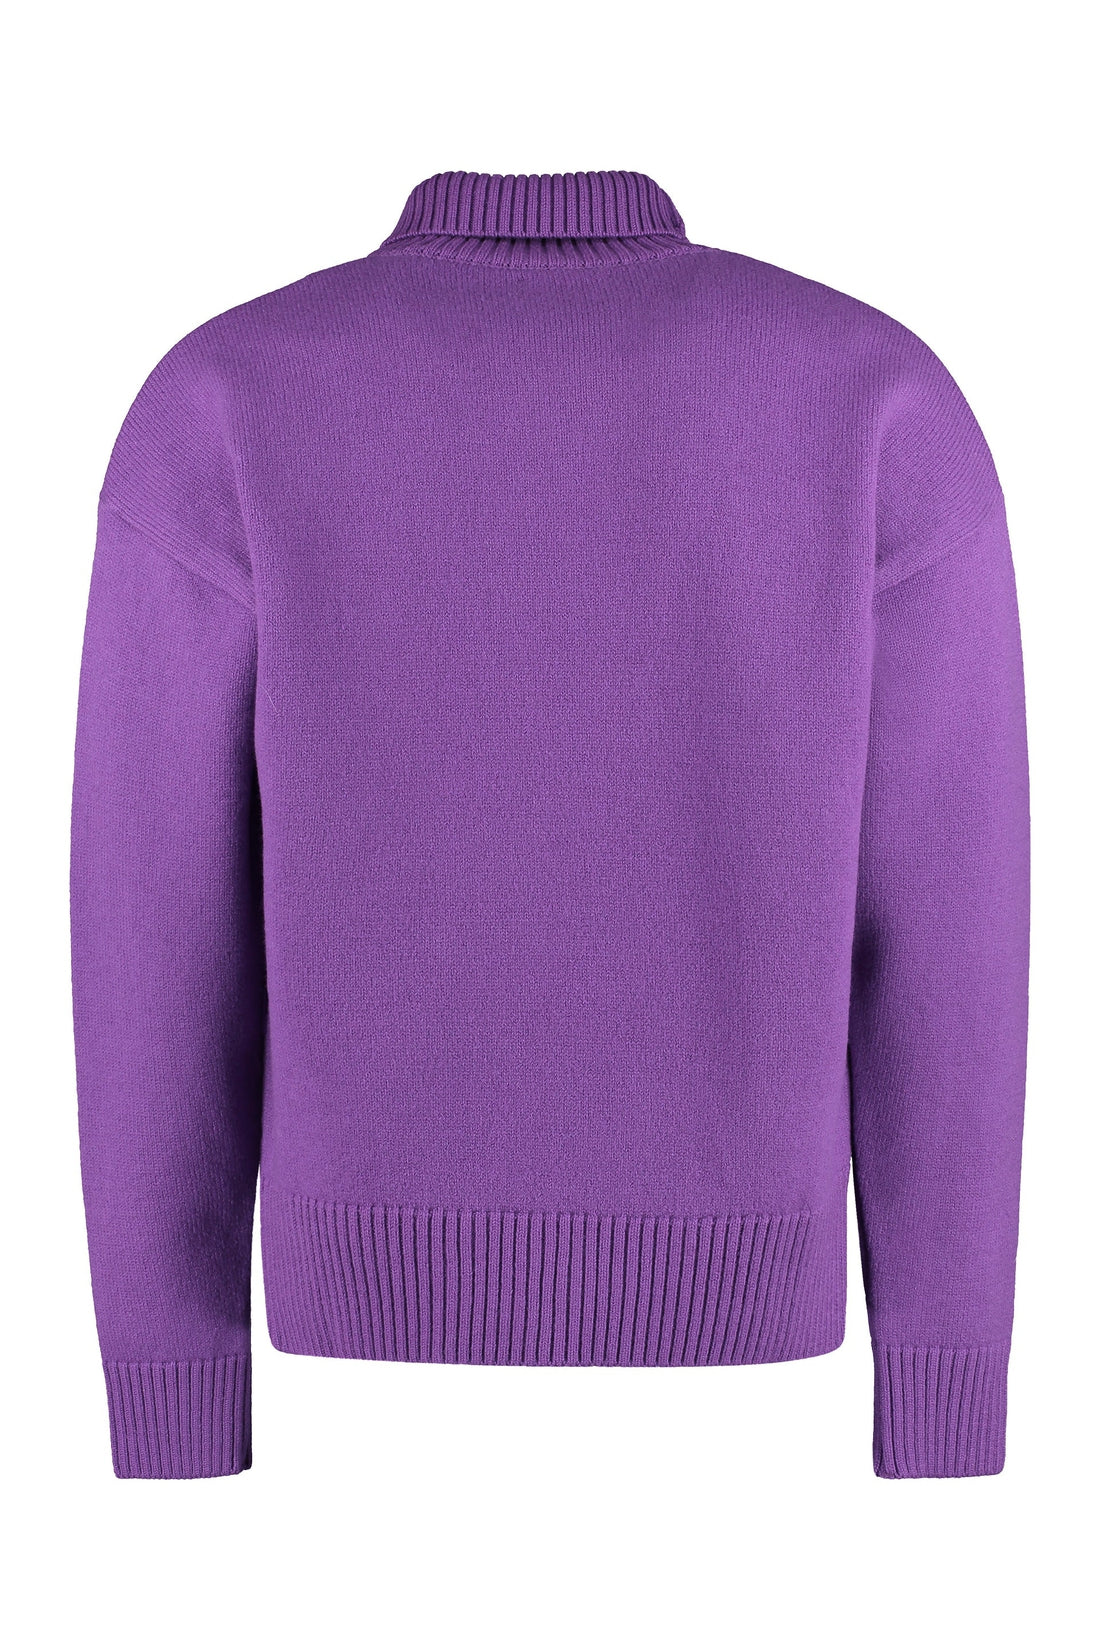 AMI PARIS-OUTLET-SALE-Wool turtleneck sweater-ARCHIVIST